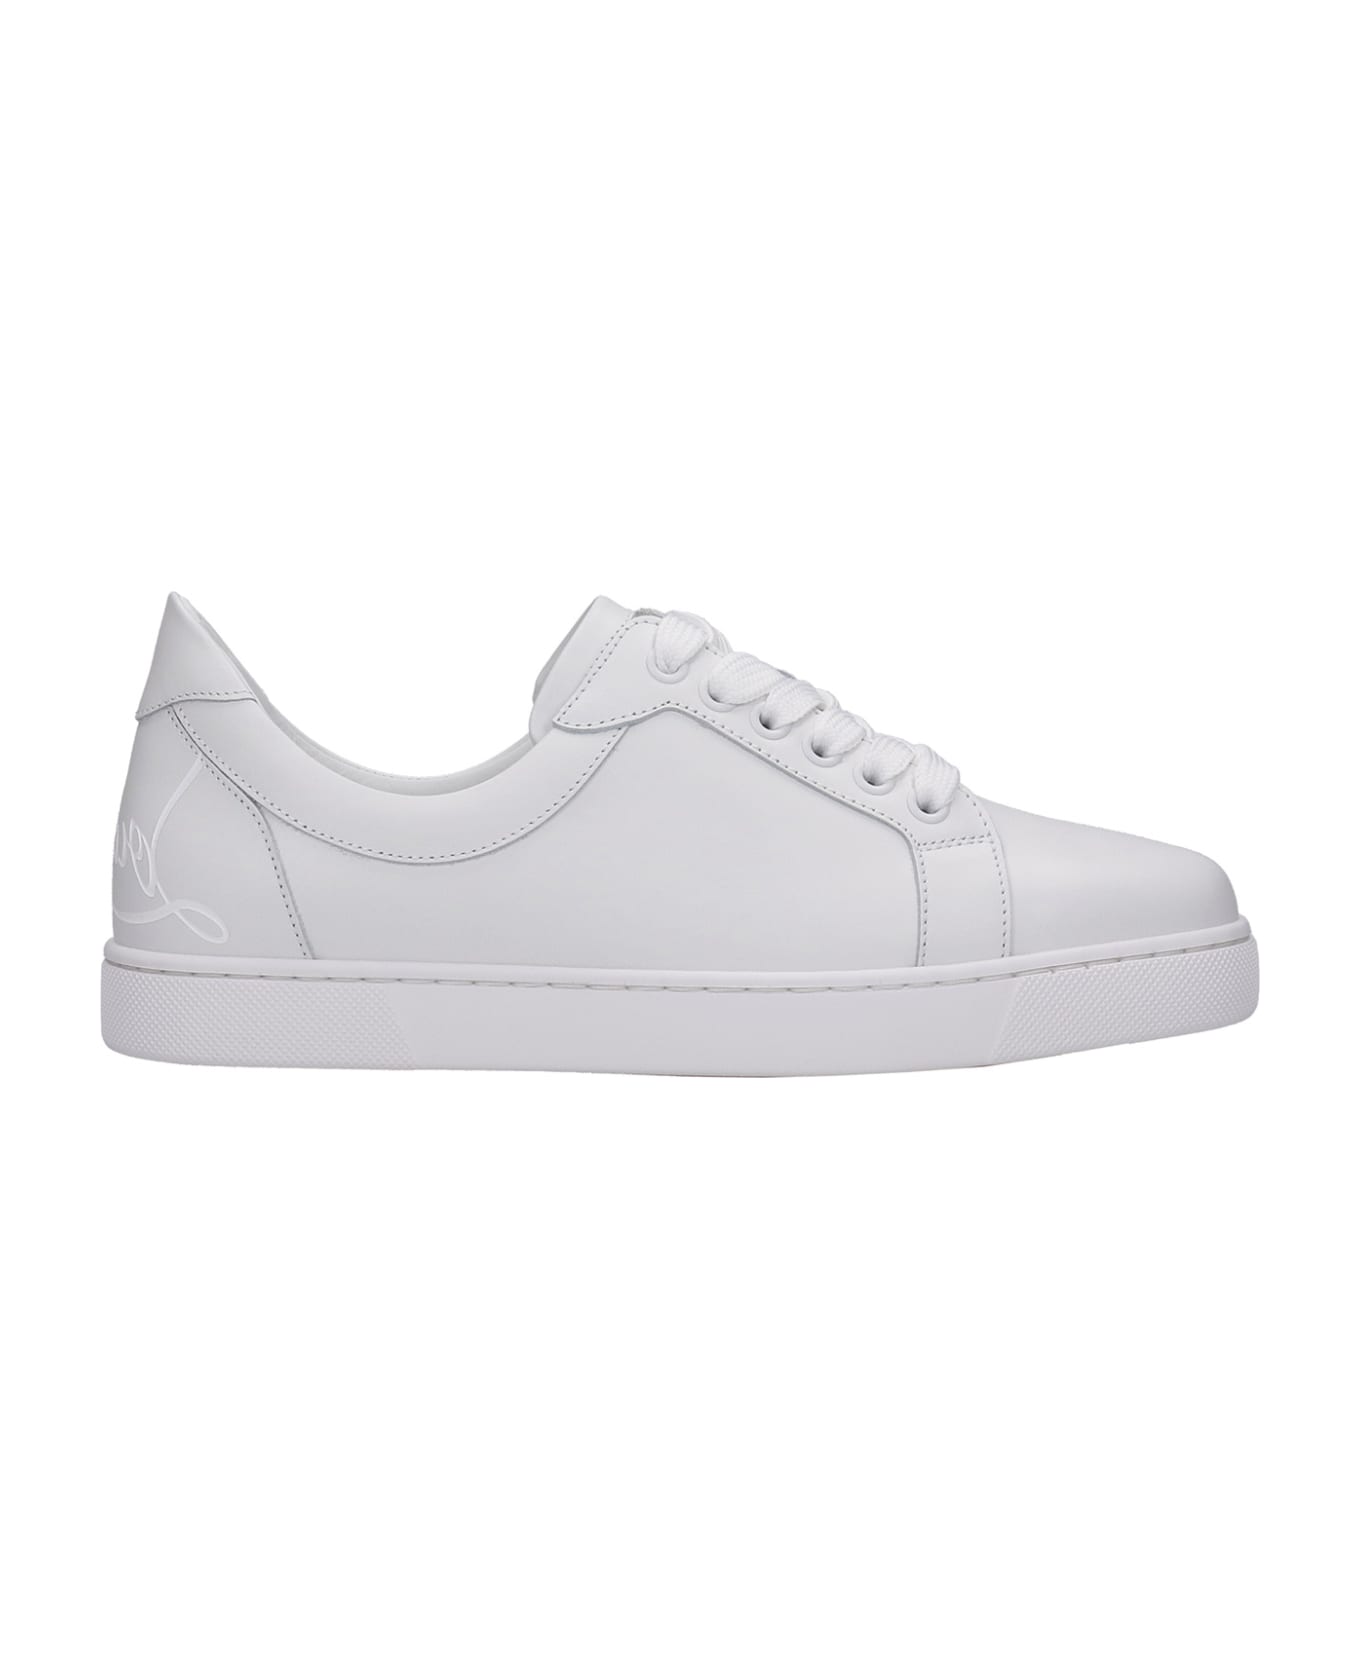 Christian Louboutin Elo Loubi  Sneakers In White Leather - white